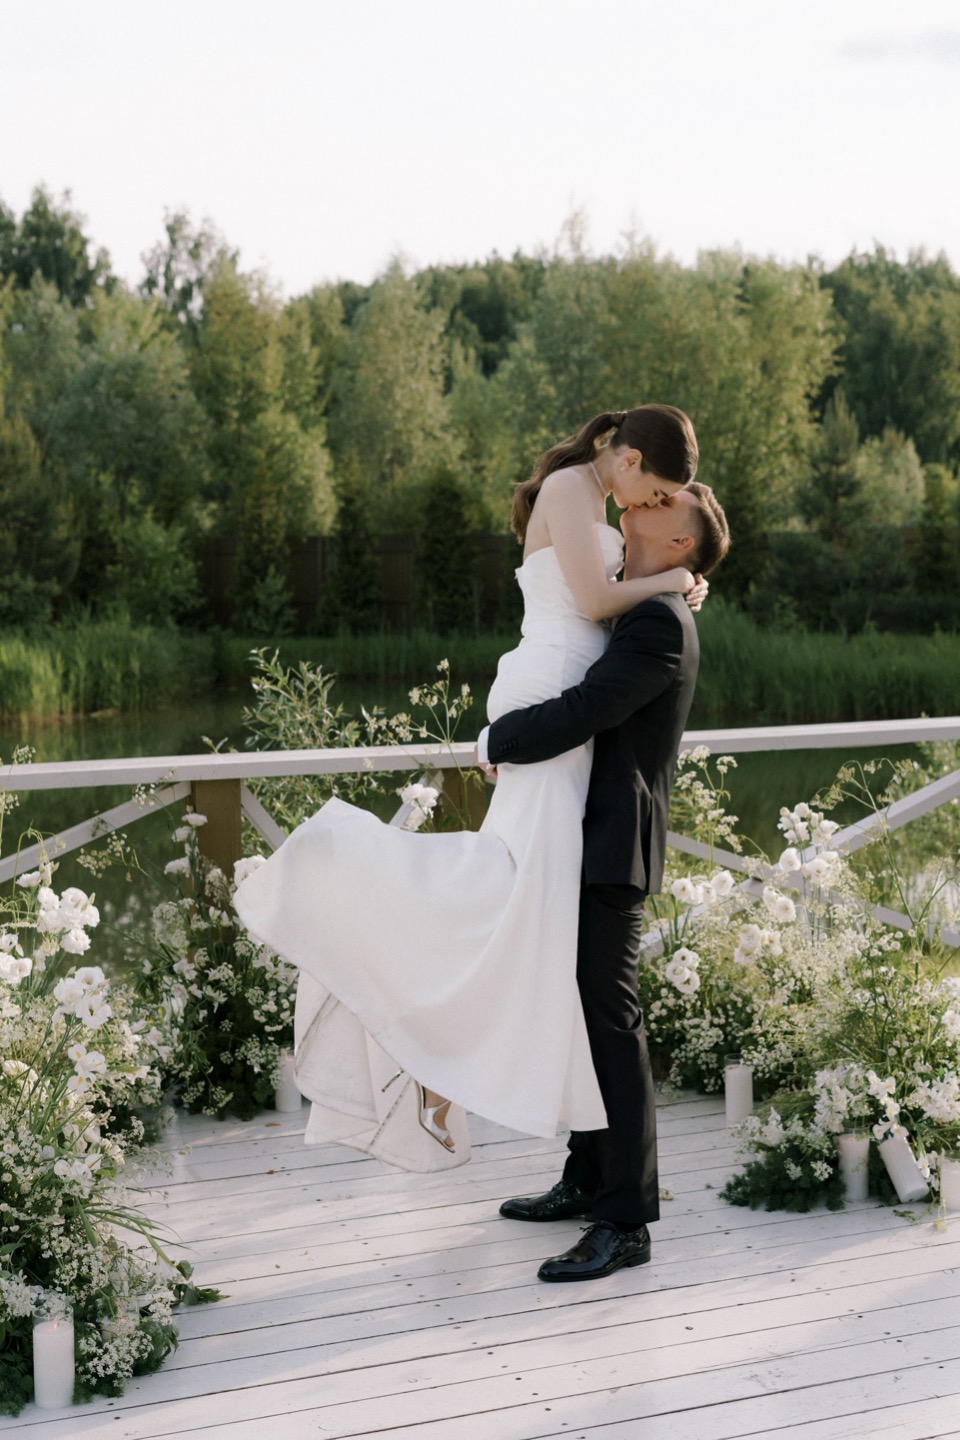 Воздушность любви: элегантная свадьба в светлой гамме